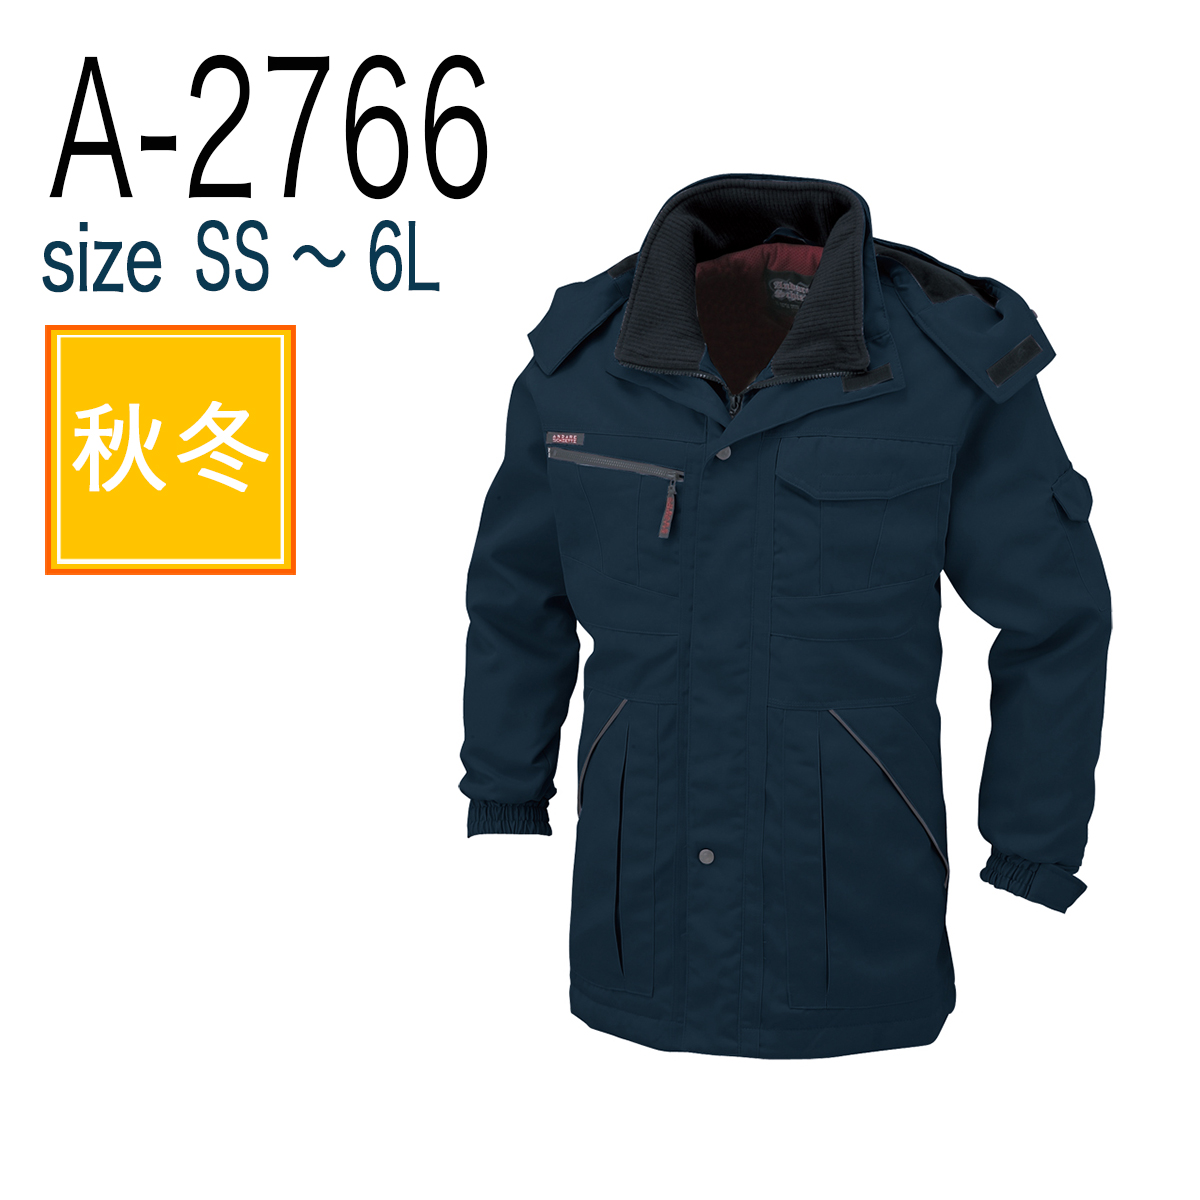 A-2766 防寒コート チャコール 4L - 5